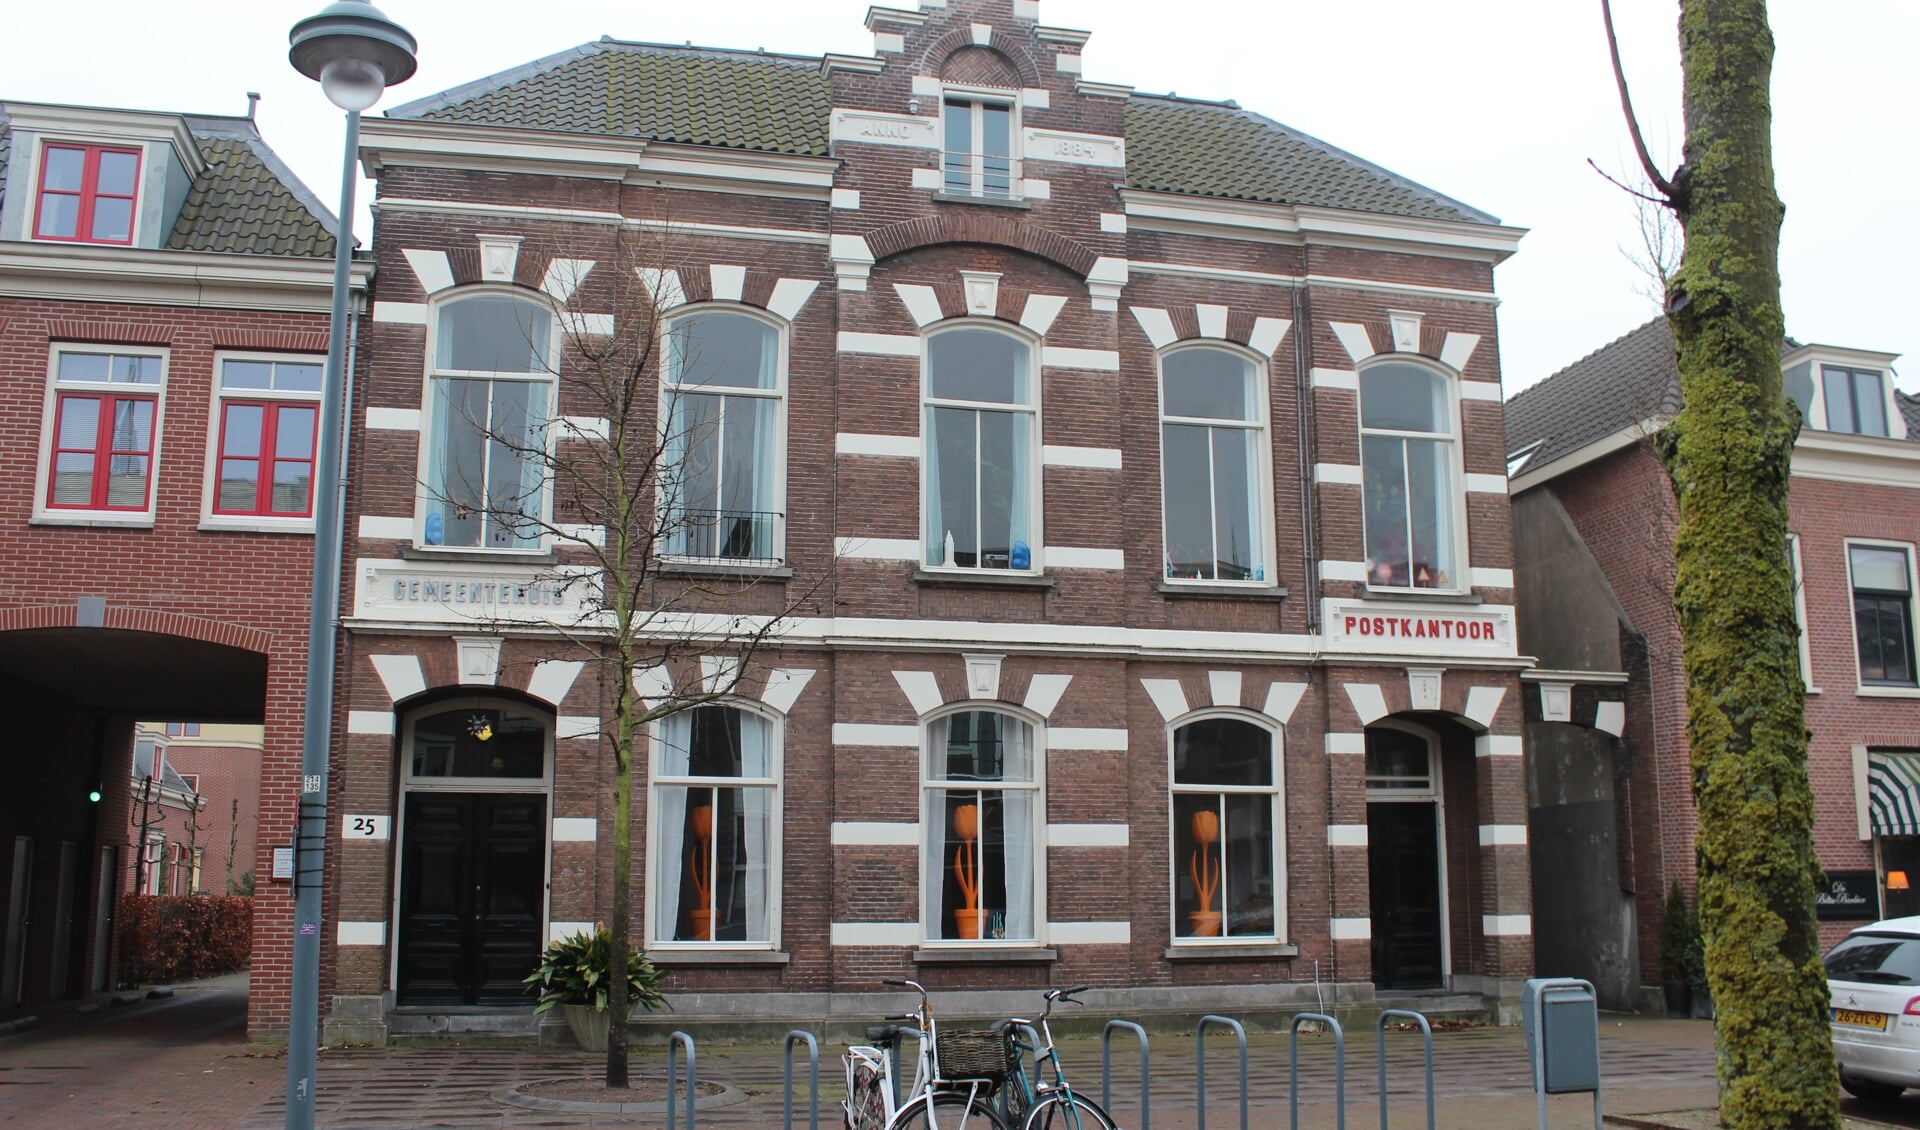 Het half-vrii-staande gebouw in neorenaissancestijl telt twee bouwlagen en heeft een rechthoekige plattegrond, met de korte zijde (voorgevel) aan de Dorpsstraat vanouds Steenstraat. In de gepleisterde banden de aanduiding Anno 1884.